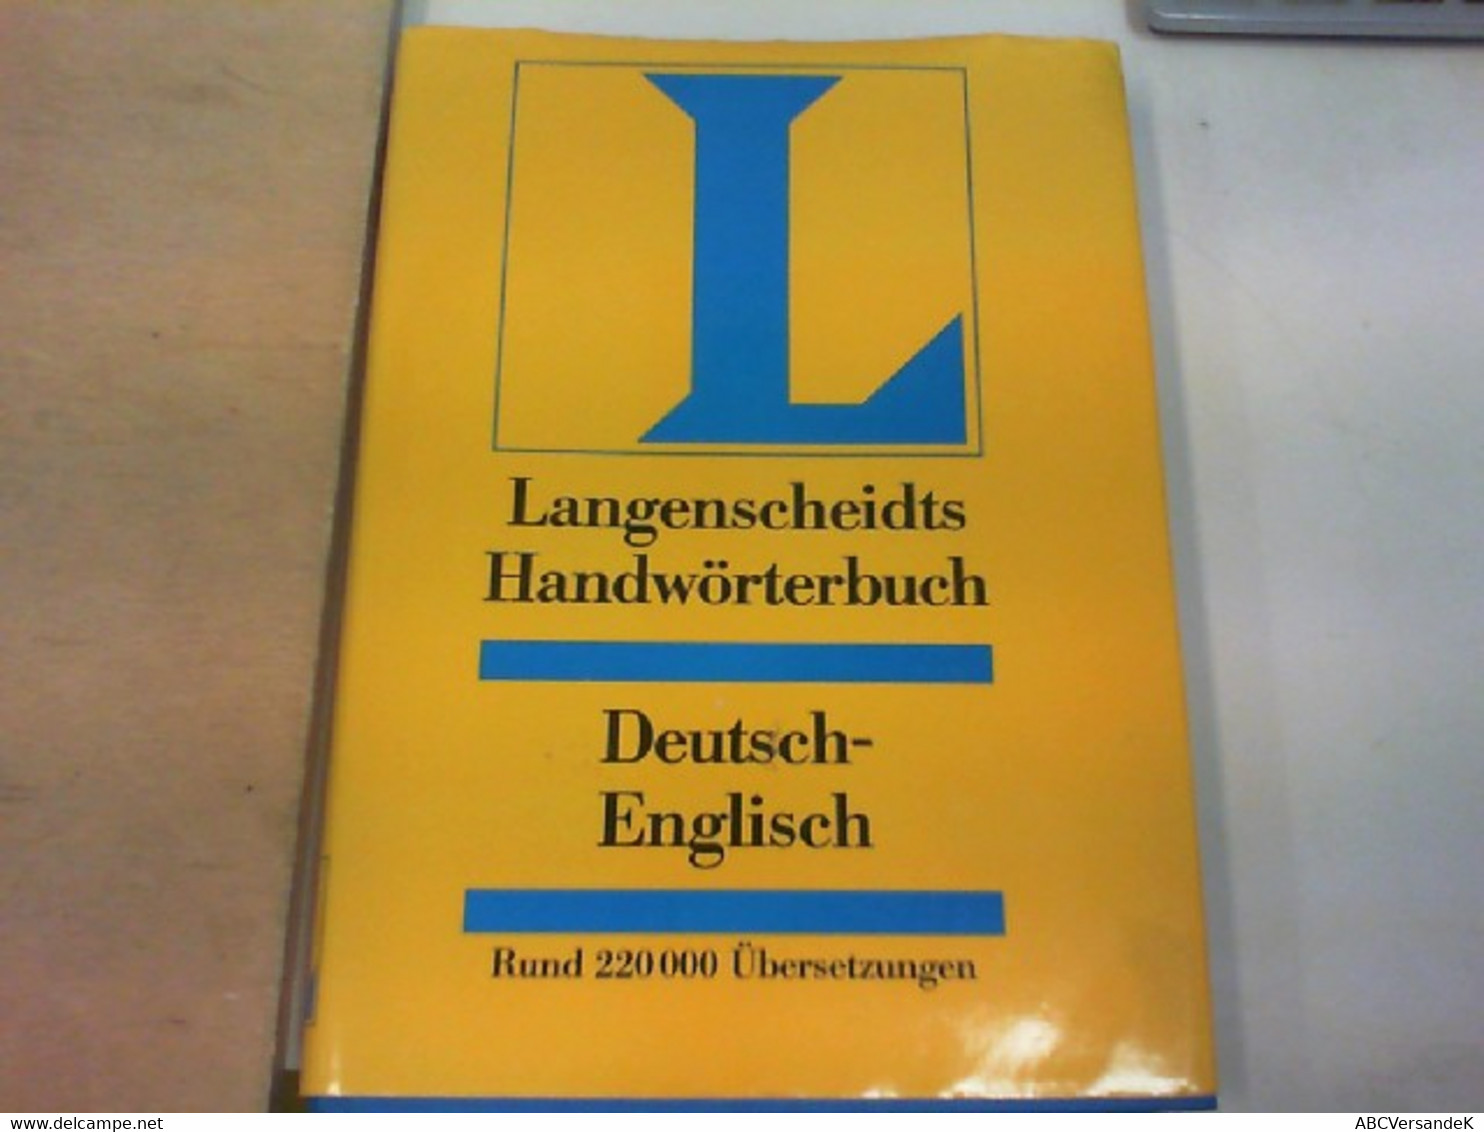 Langenscheidts Handwörterbuch ENGLISCH  Teil 2 Deutsch / Englisch - Lexika